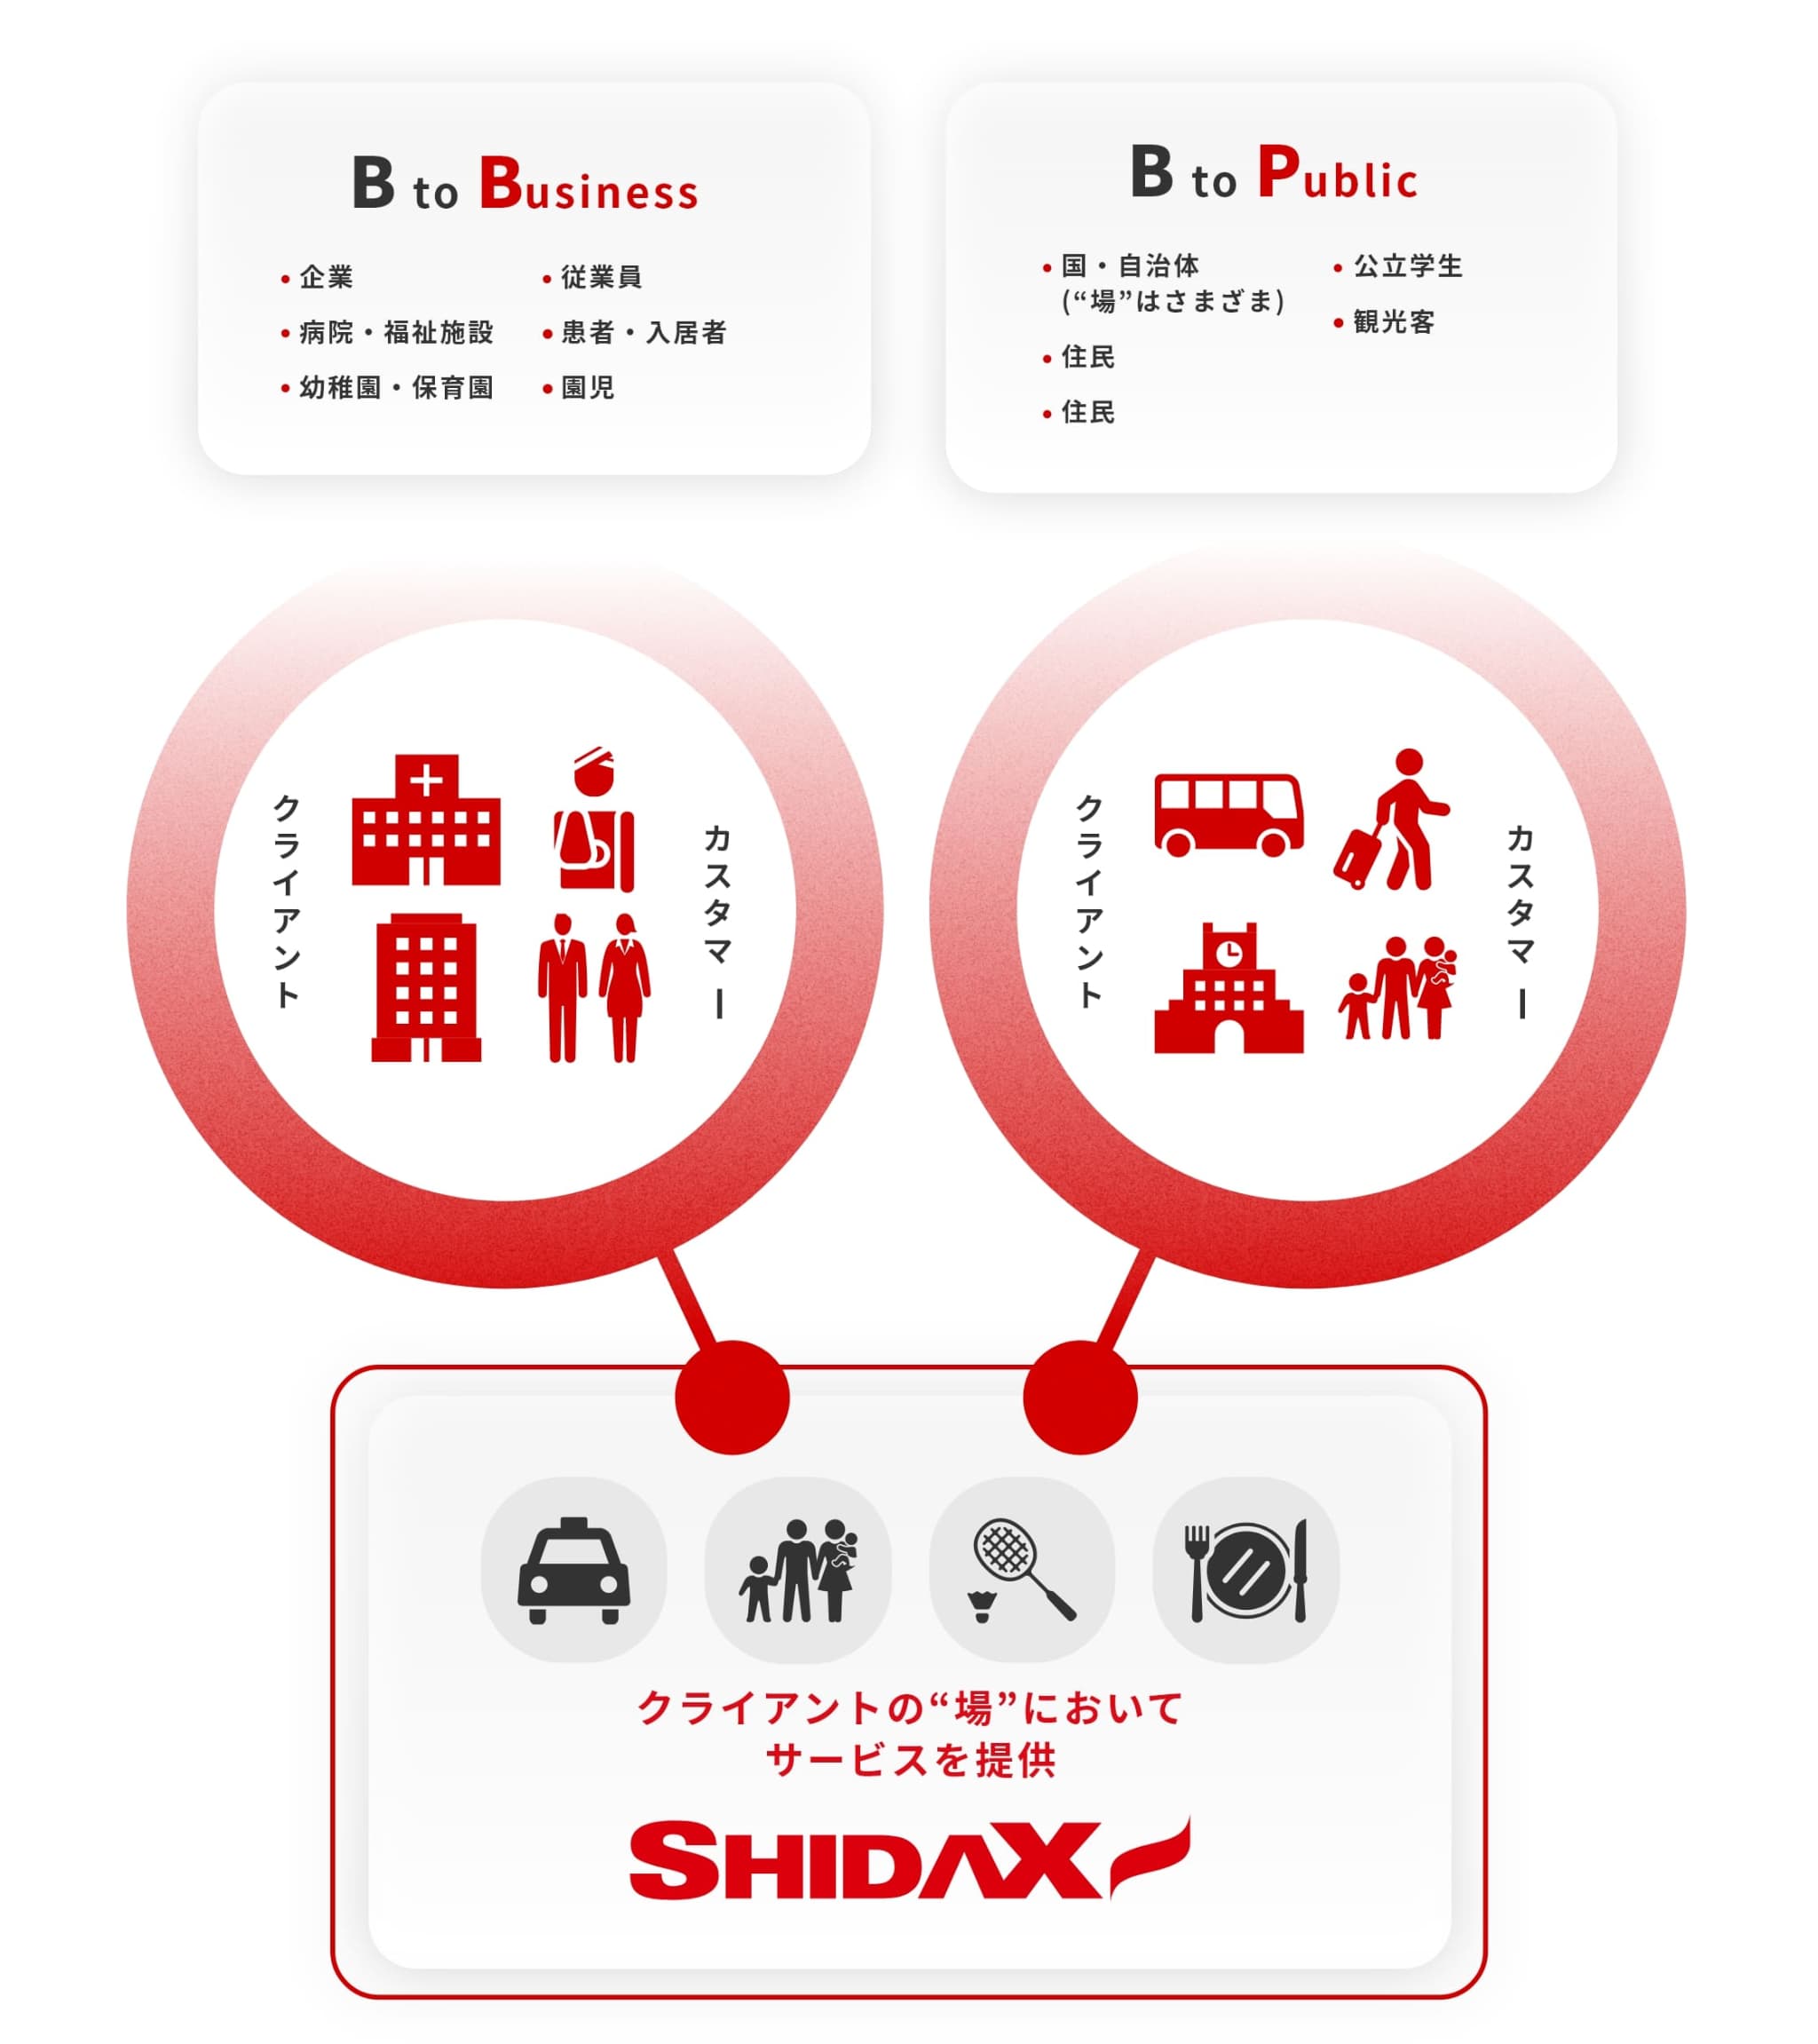 シダックスグループの事業カテゴリー